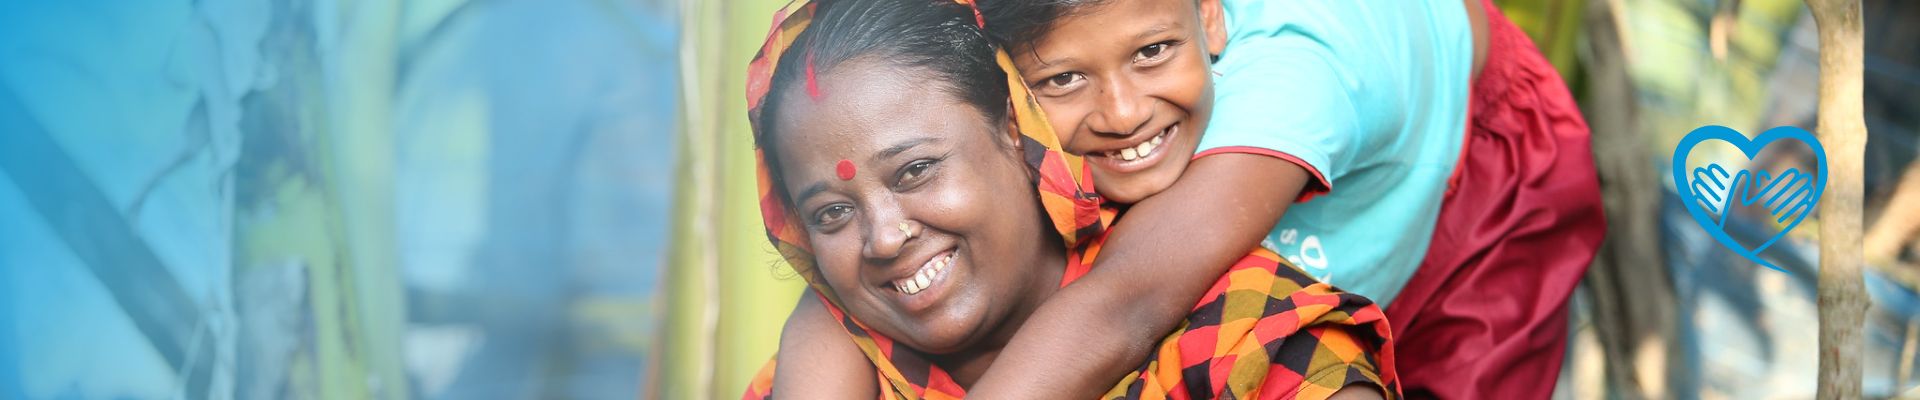 Sohn umarmt seine Mutter und beide lächeln in die Kamera - Bangladesch UN Women